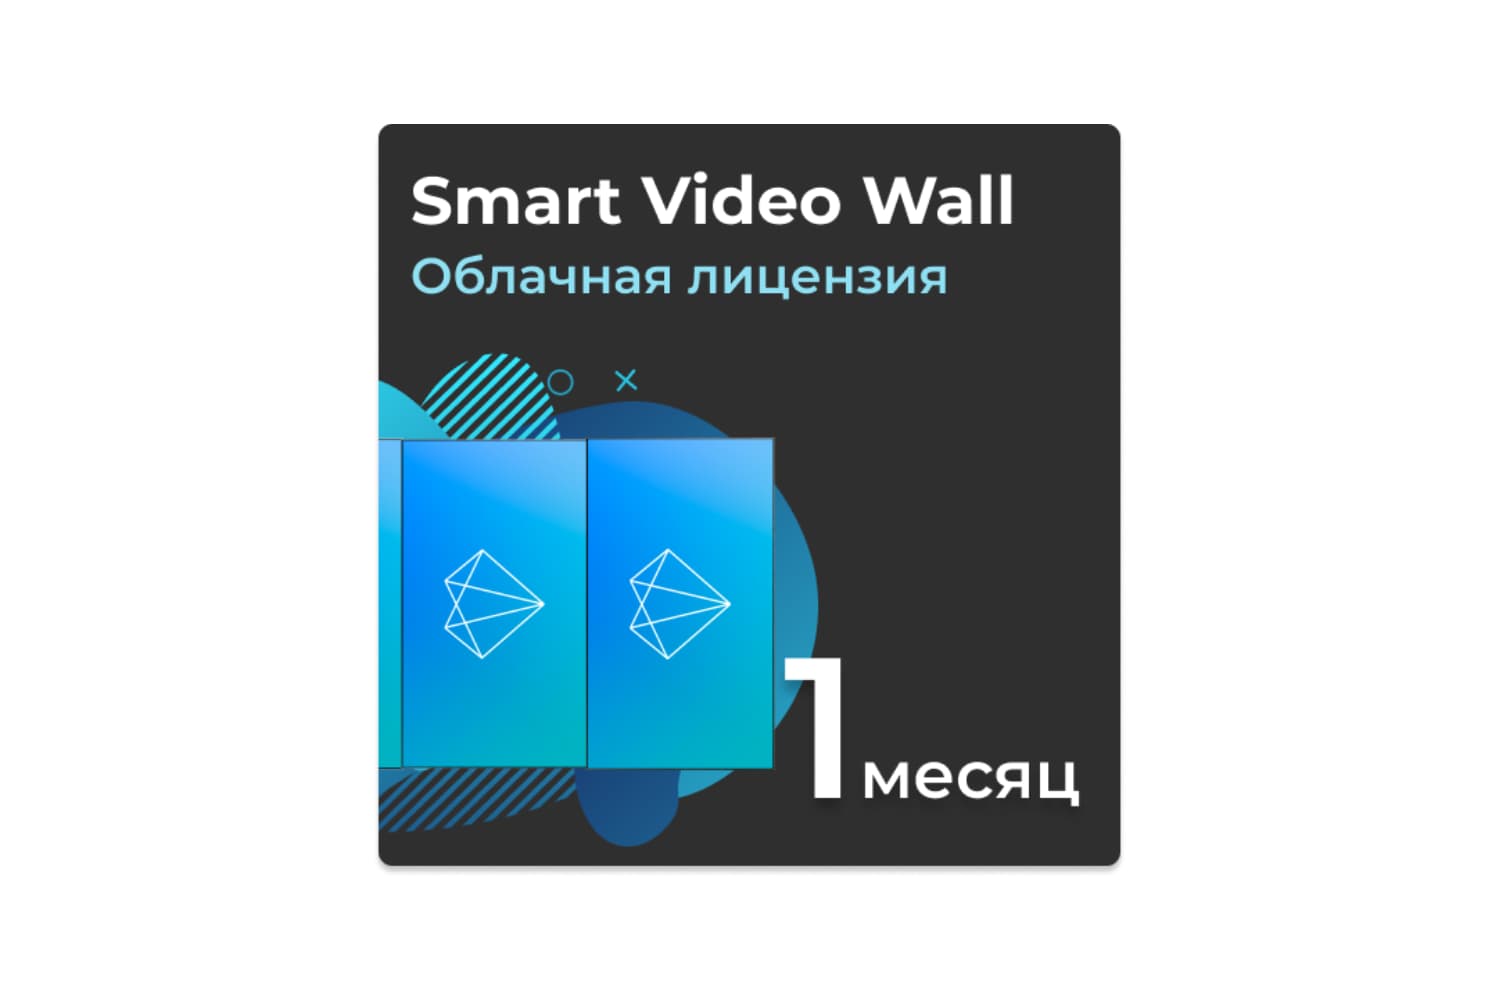  Фото облачная лицензия smart video wall до 4к на 1 месяц - фото 1